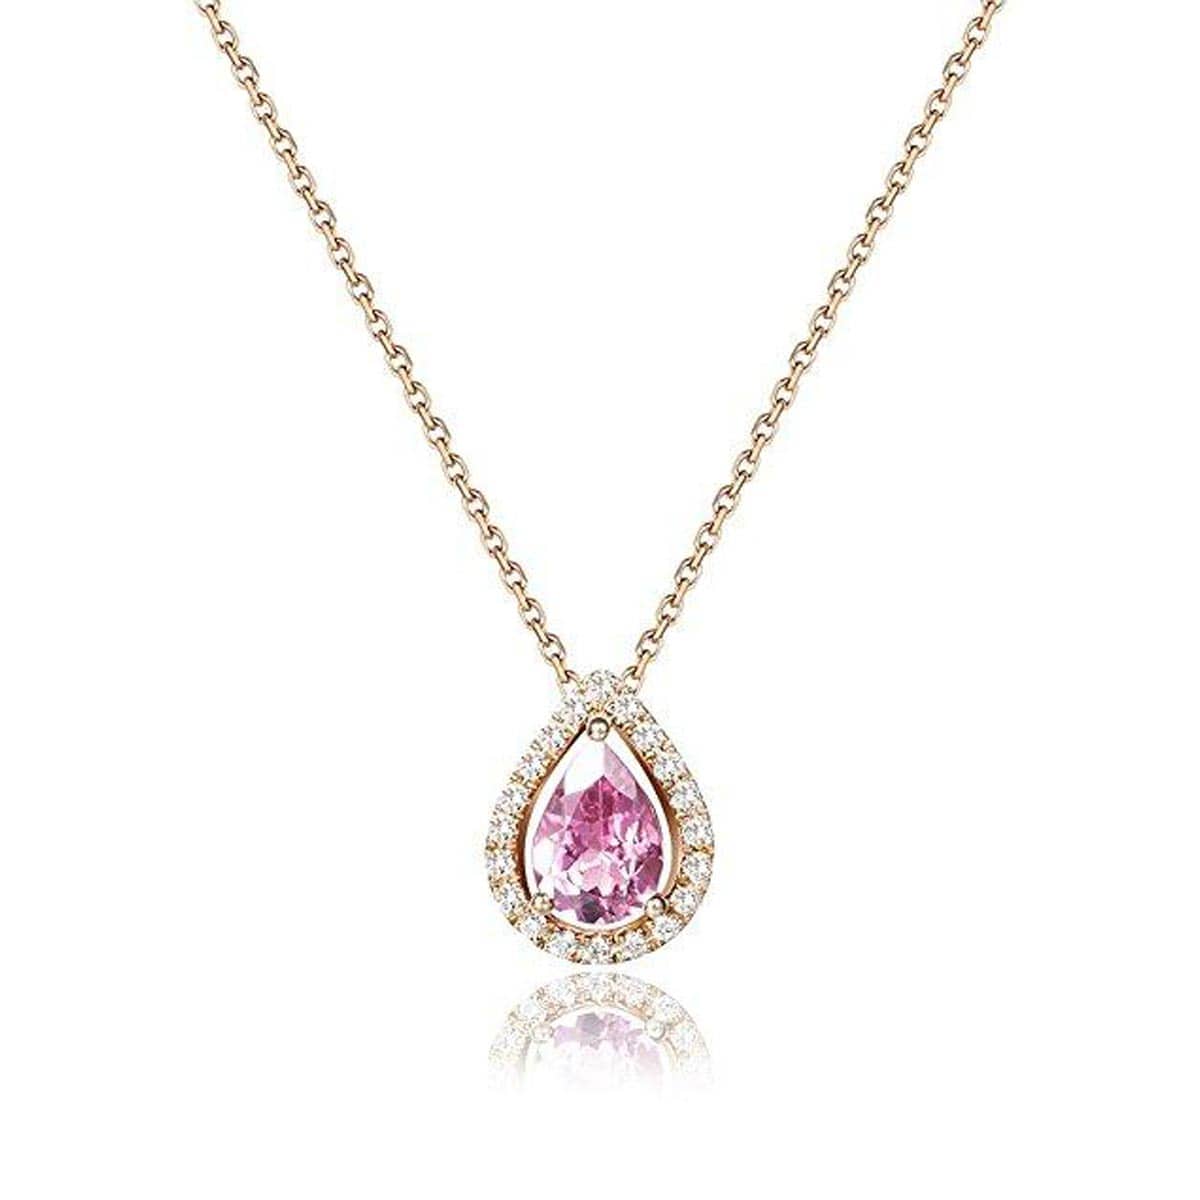 FANCIME Le Petit Royal "Michelle" 18k Rose Gold Necklace Main